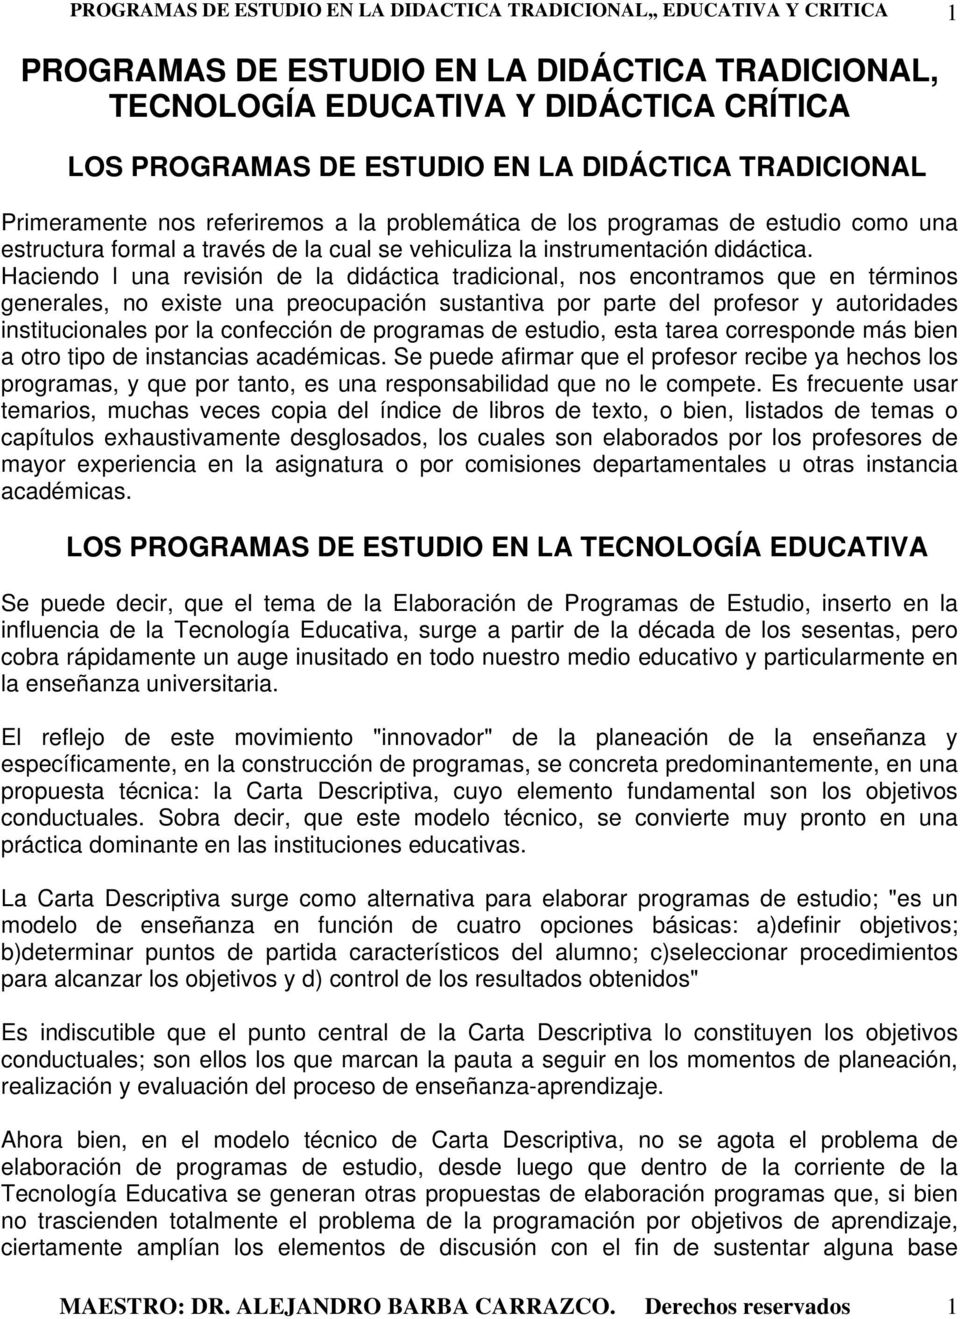 PROGRAMAS DE ESTUDIO EN LA DIDÁCTICA TRADICIONAL, TECNOLOGÍA EDUCATIVA Y DIDÁCTICA  CRÍTICA - PDF Descargar libre